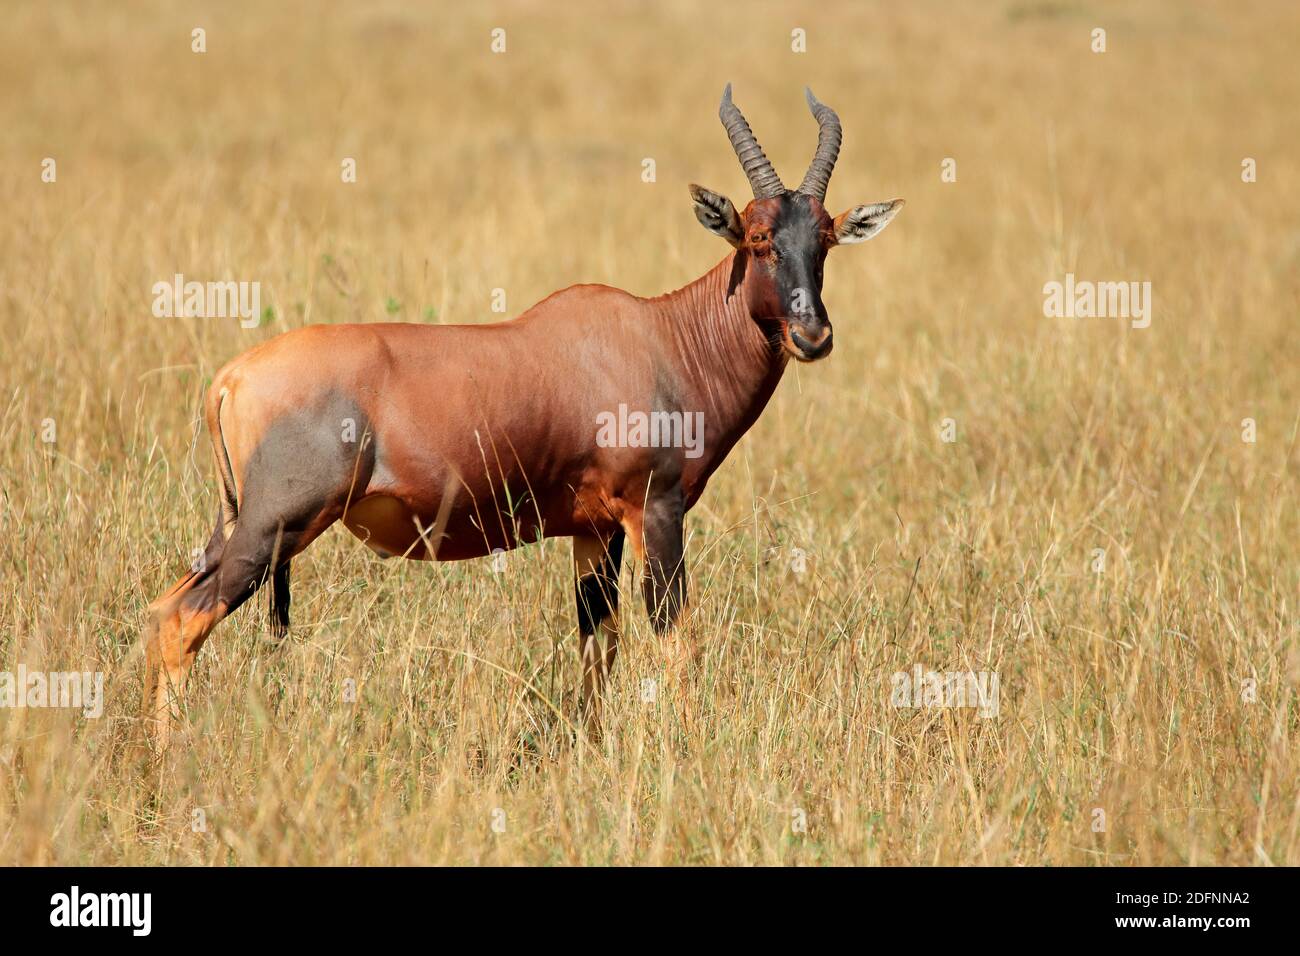 Une antilope de topi (Damaliscus korrigum) dans les prairies, réserve nationale de Masai Mara, Kenya Banque D'Images